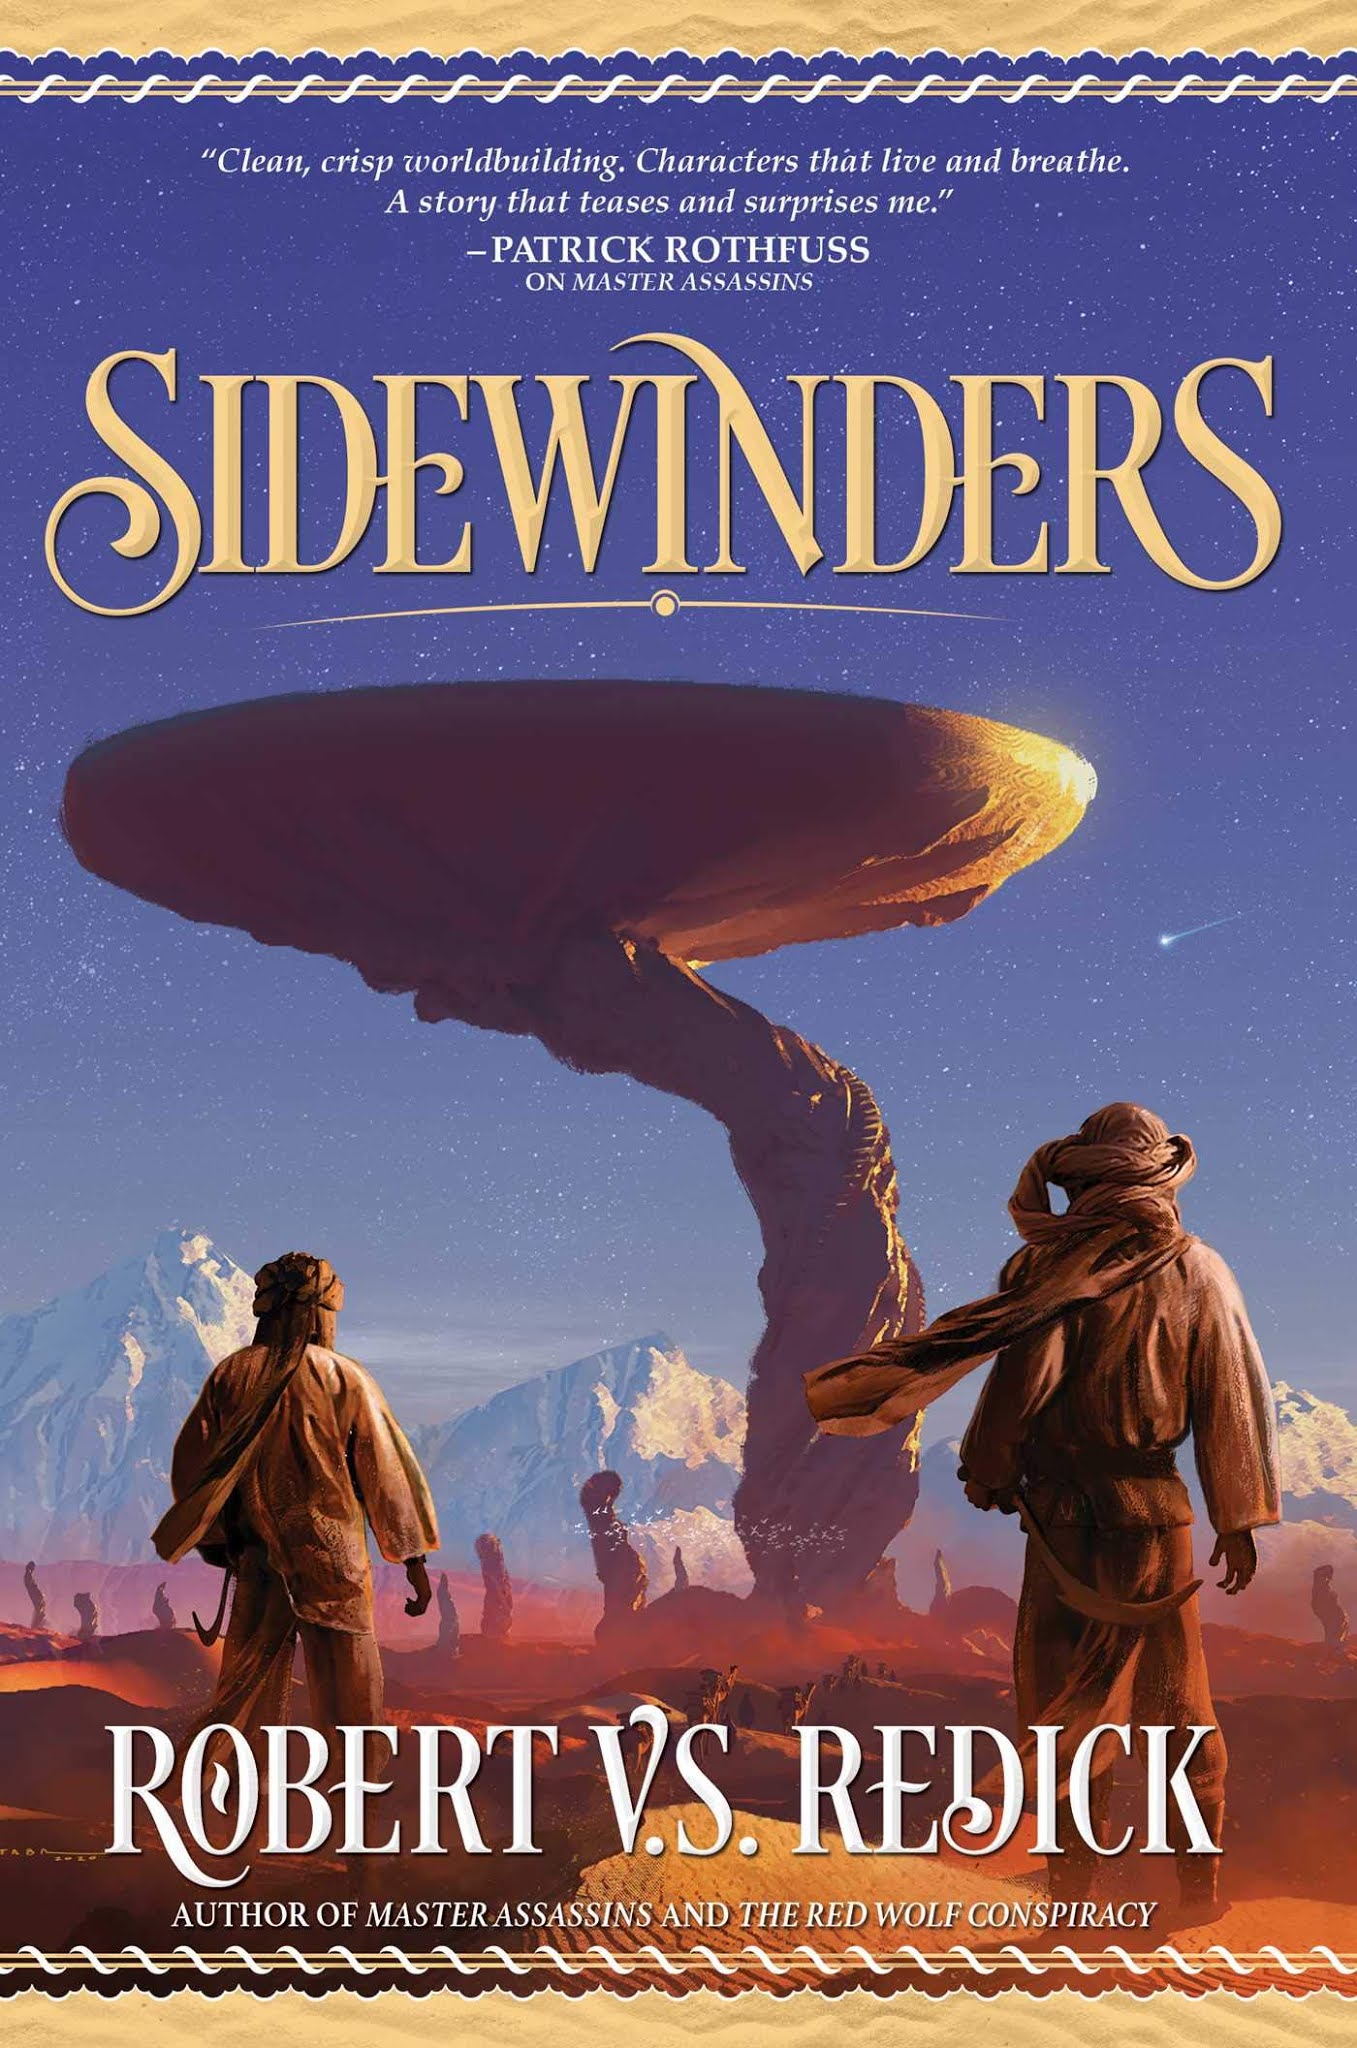 Sidewinders by Robert V.S. Redick